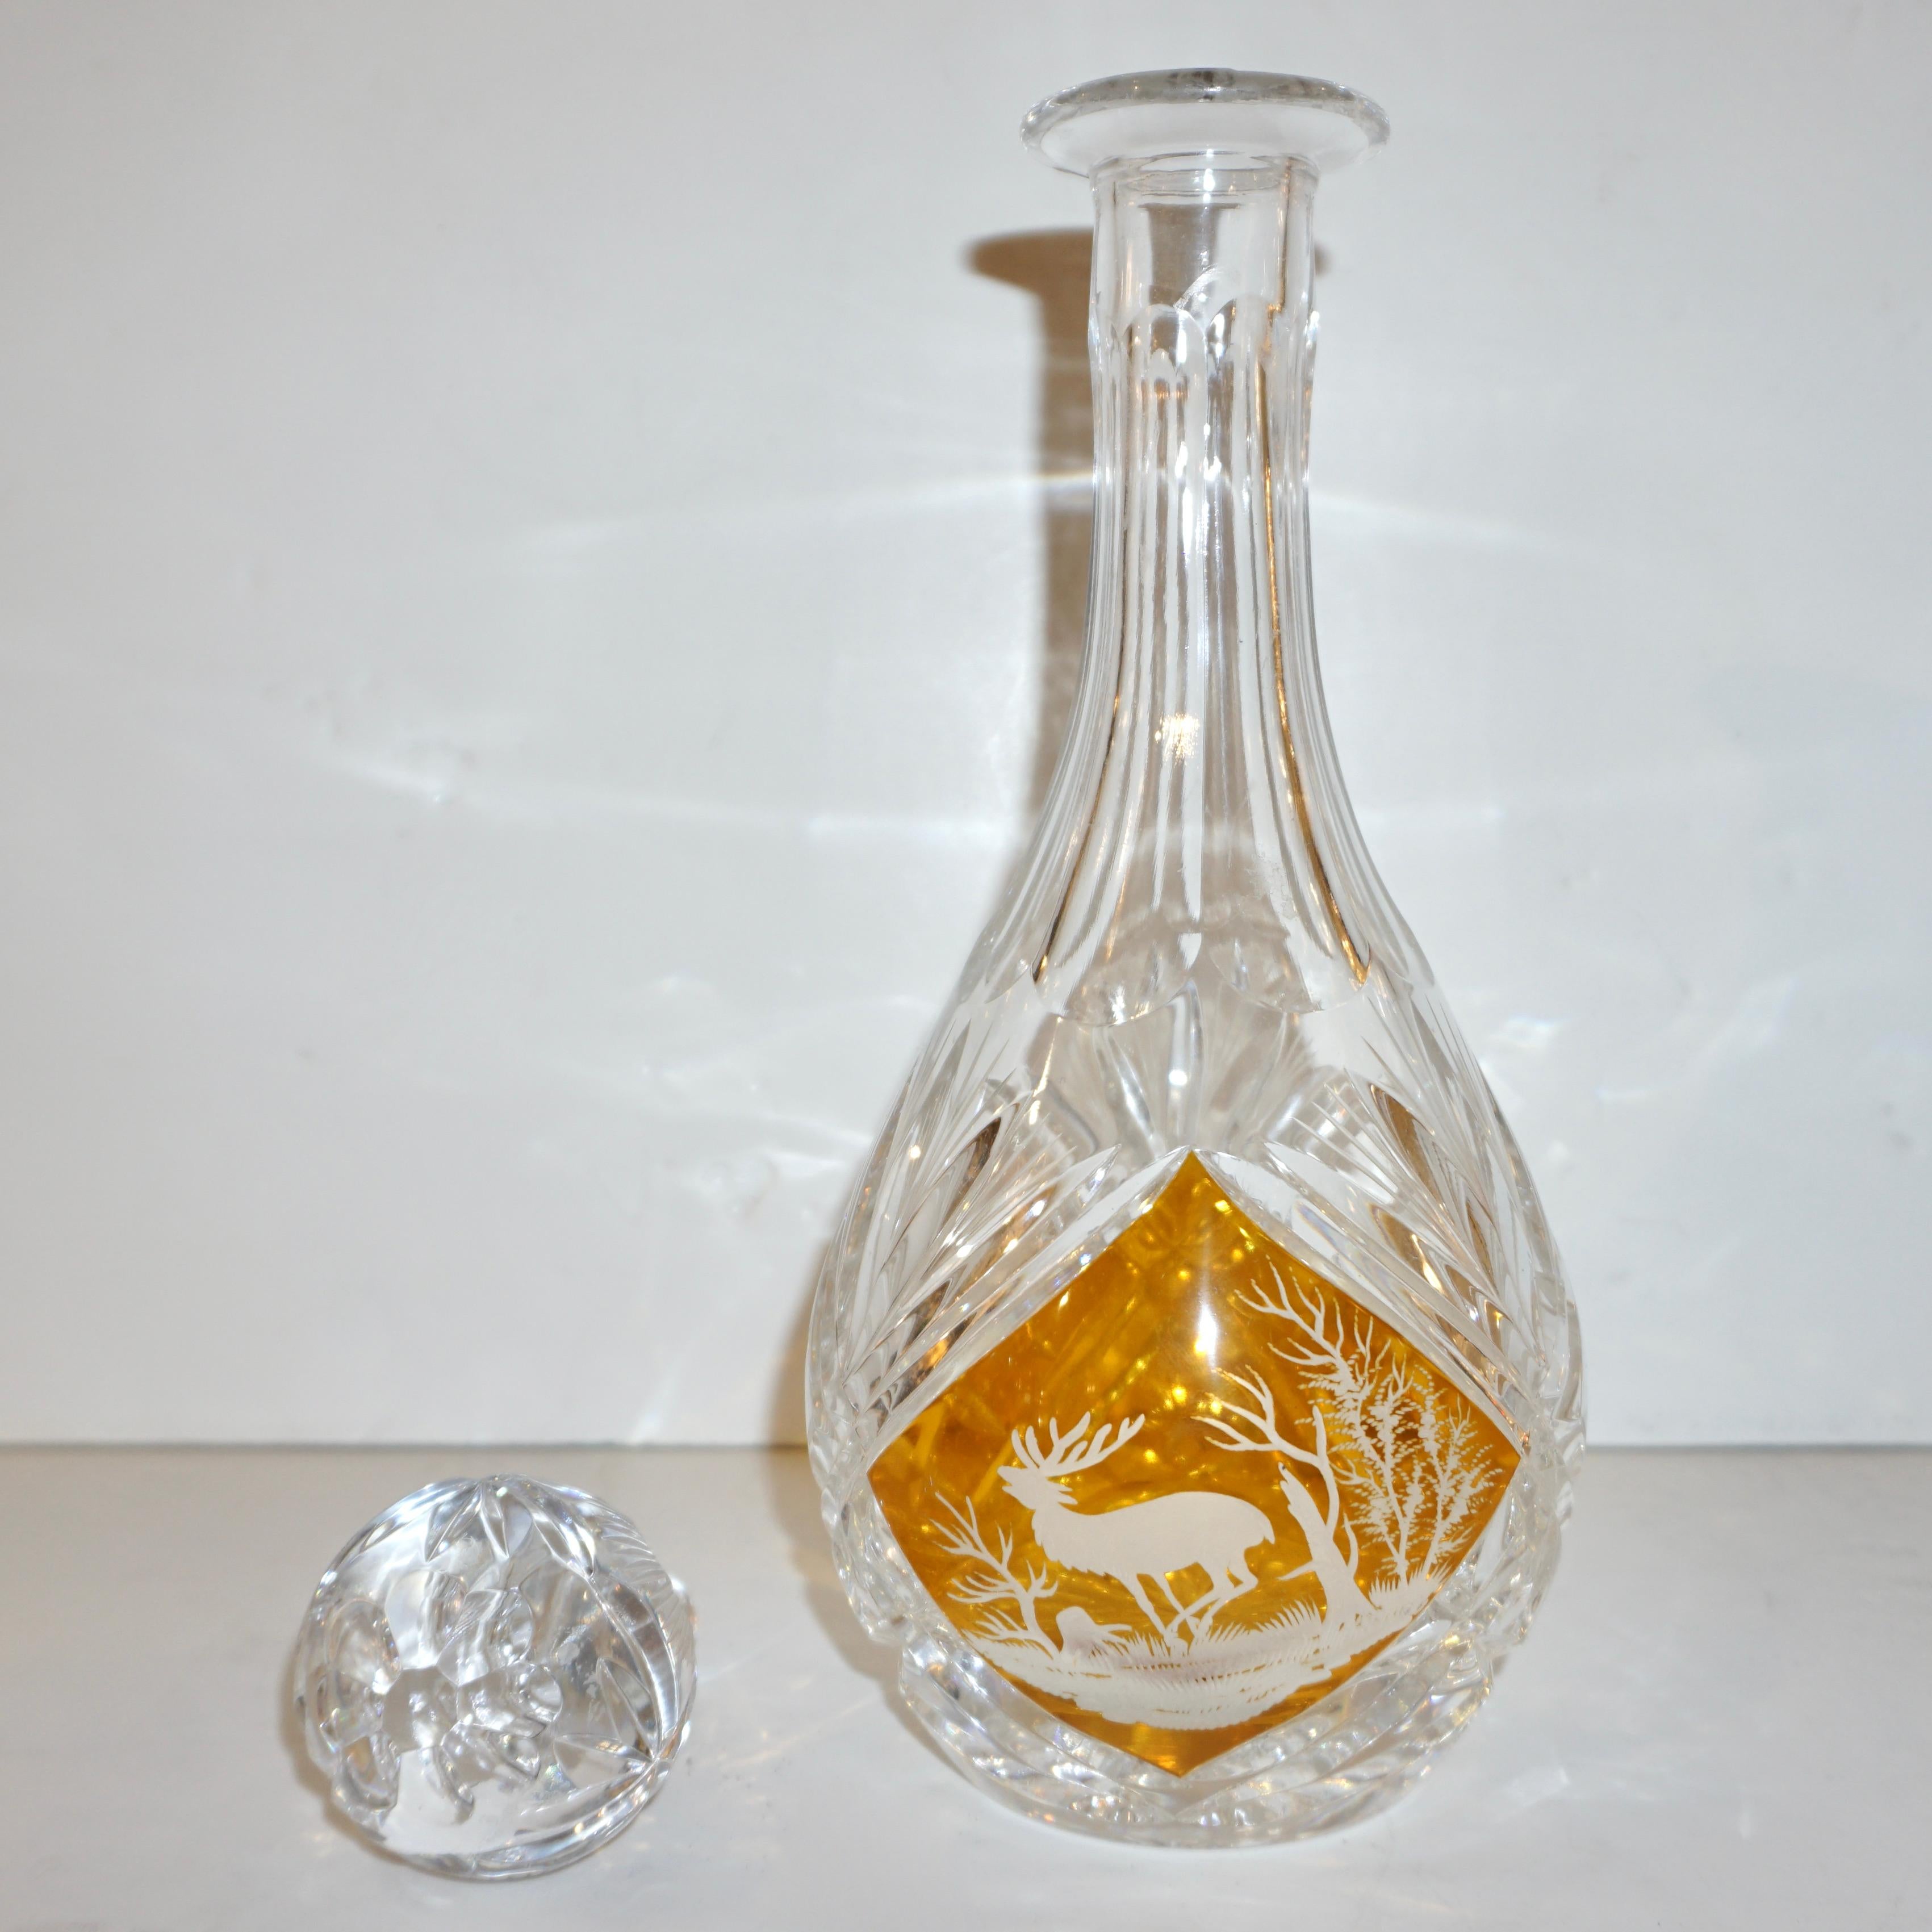 Fin du 20e siècle Flacon de liqueur autrichien vintage en verre ambré avec motif animal gravé et superposé en or, années 1970  en vente